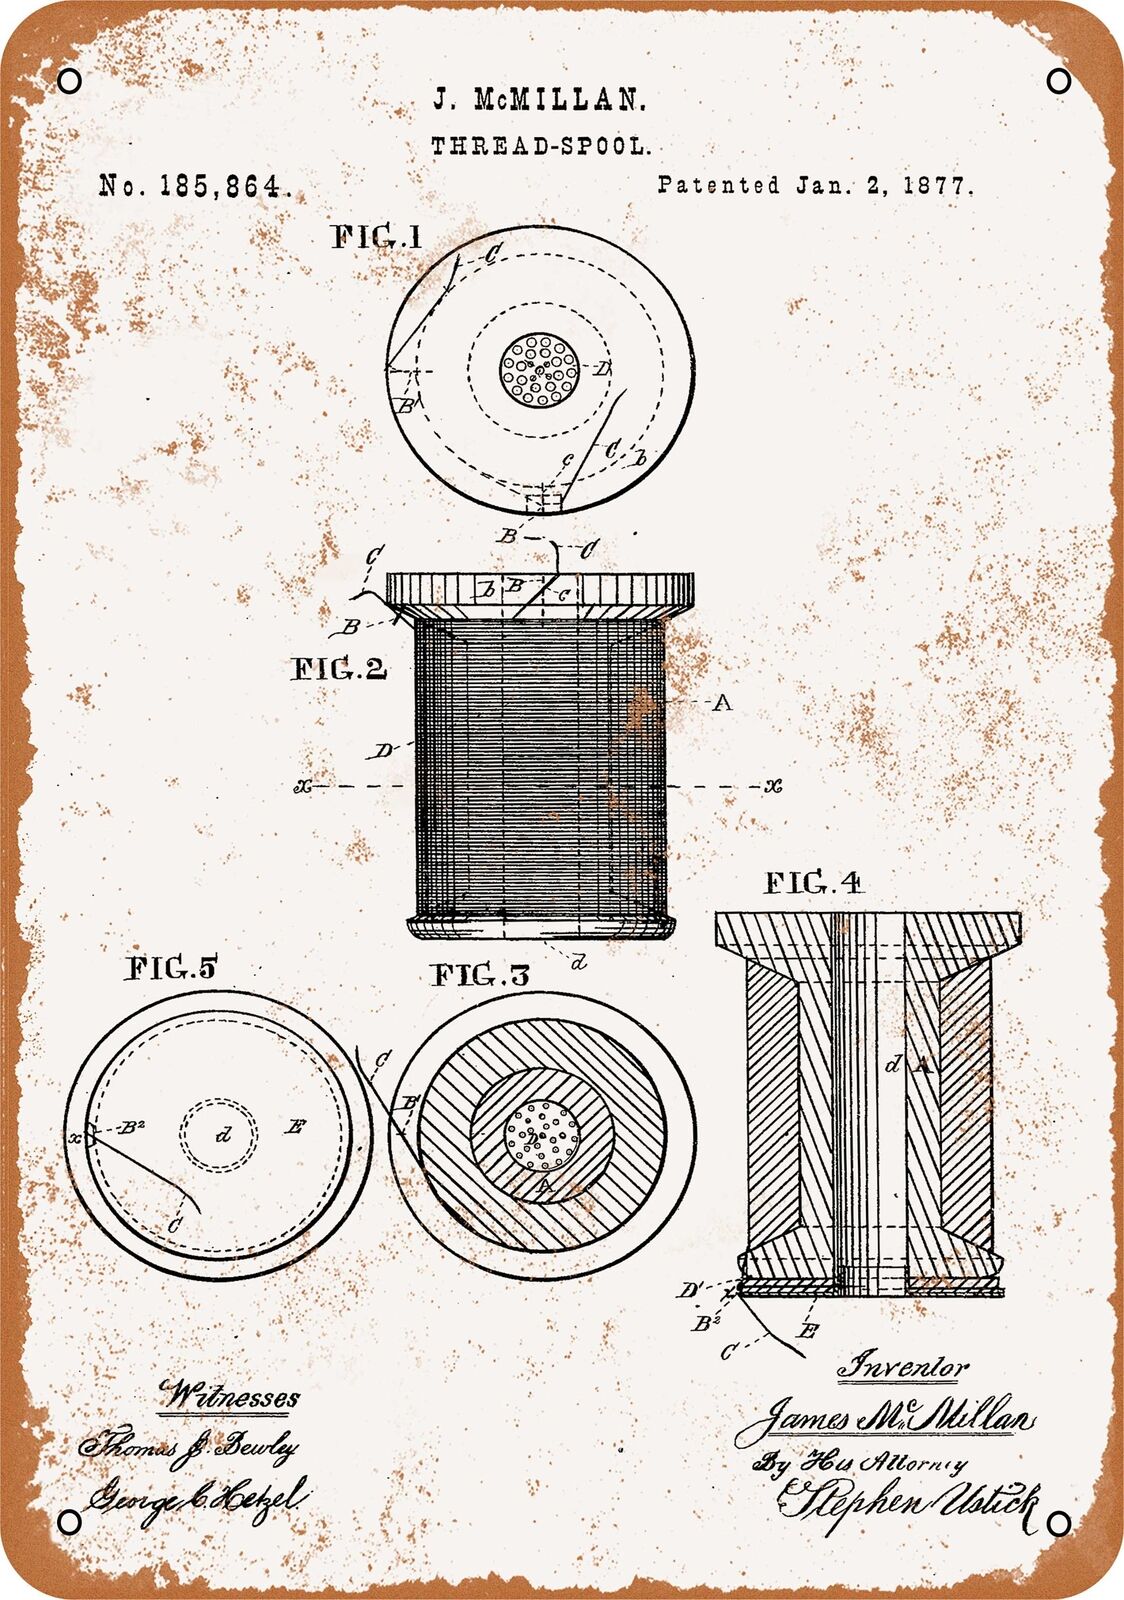 Metal Sign - 1877 Thread Spool Patent -- Vintage Look